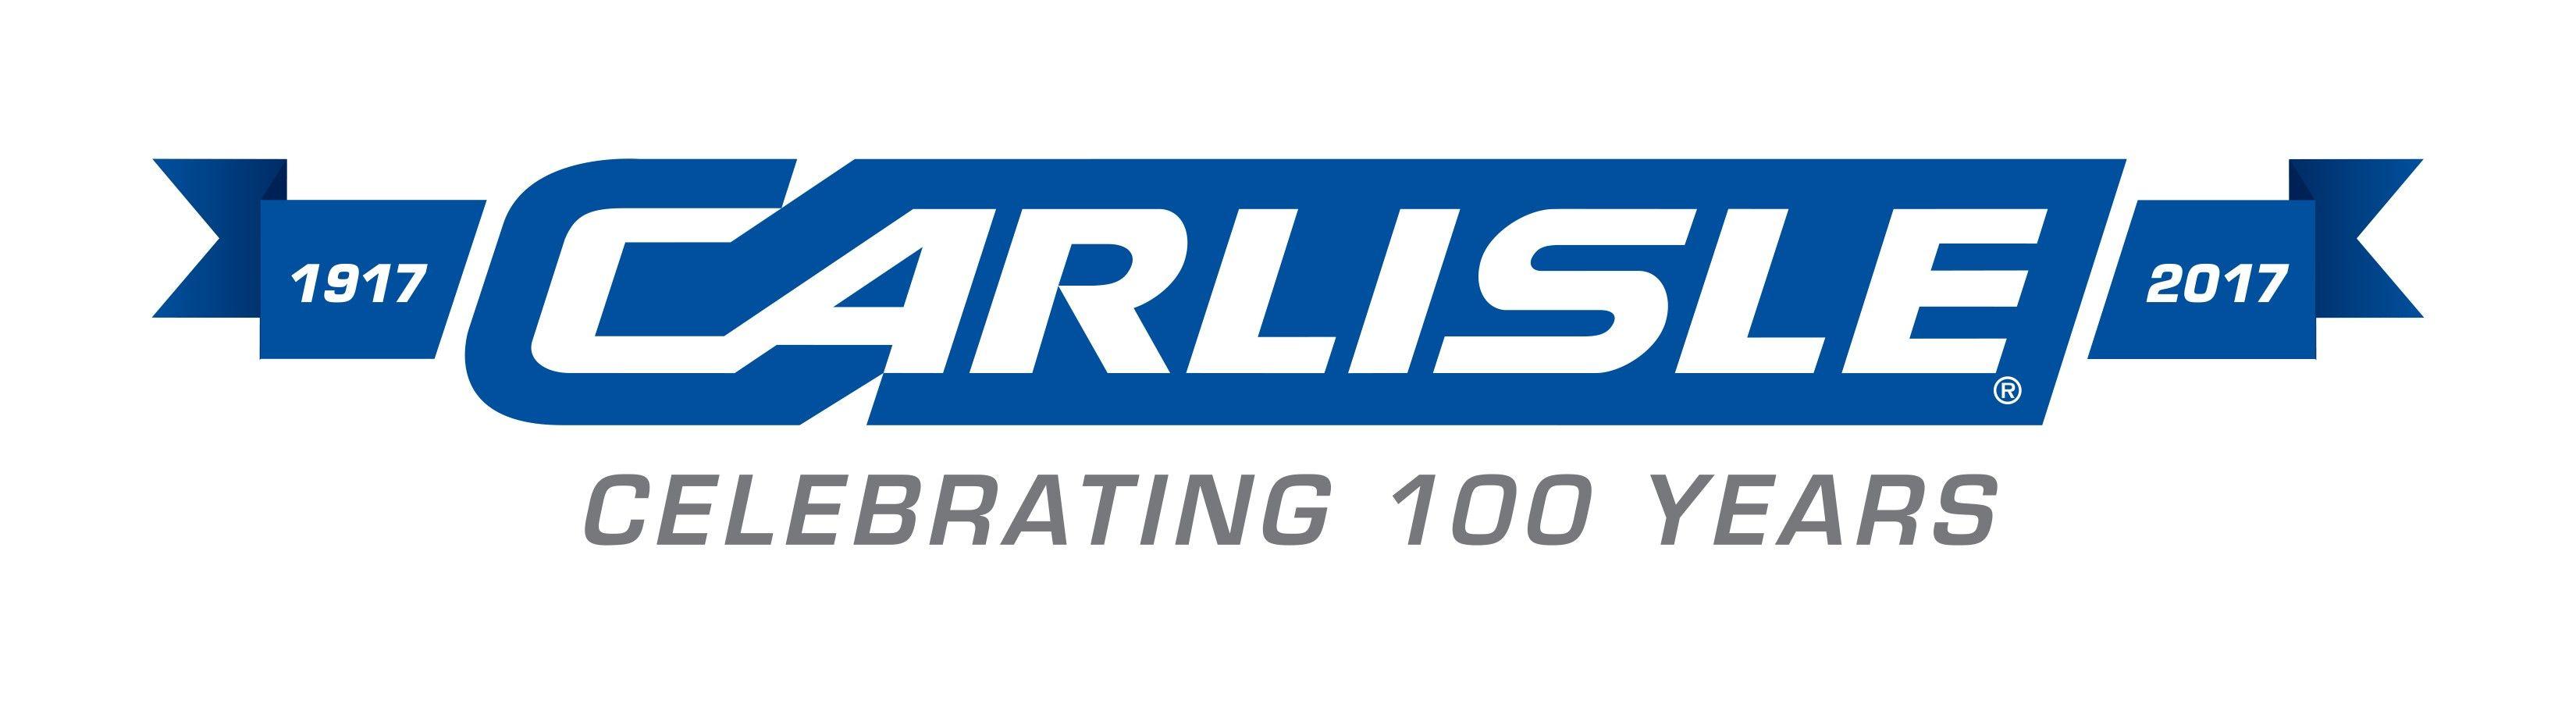 Carlisle Logo - Carlisle Cos. to Acquire Petersen Aluminum for $197 Million